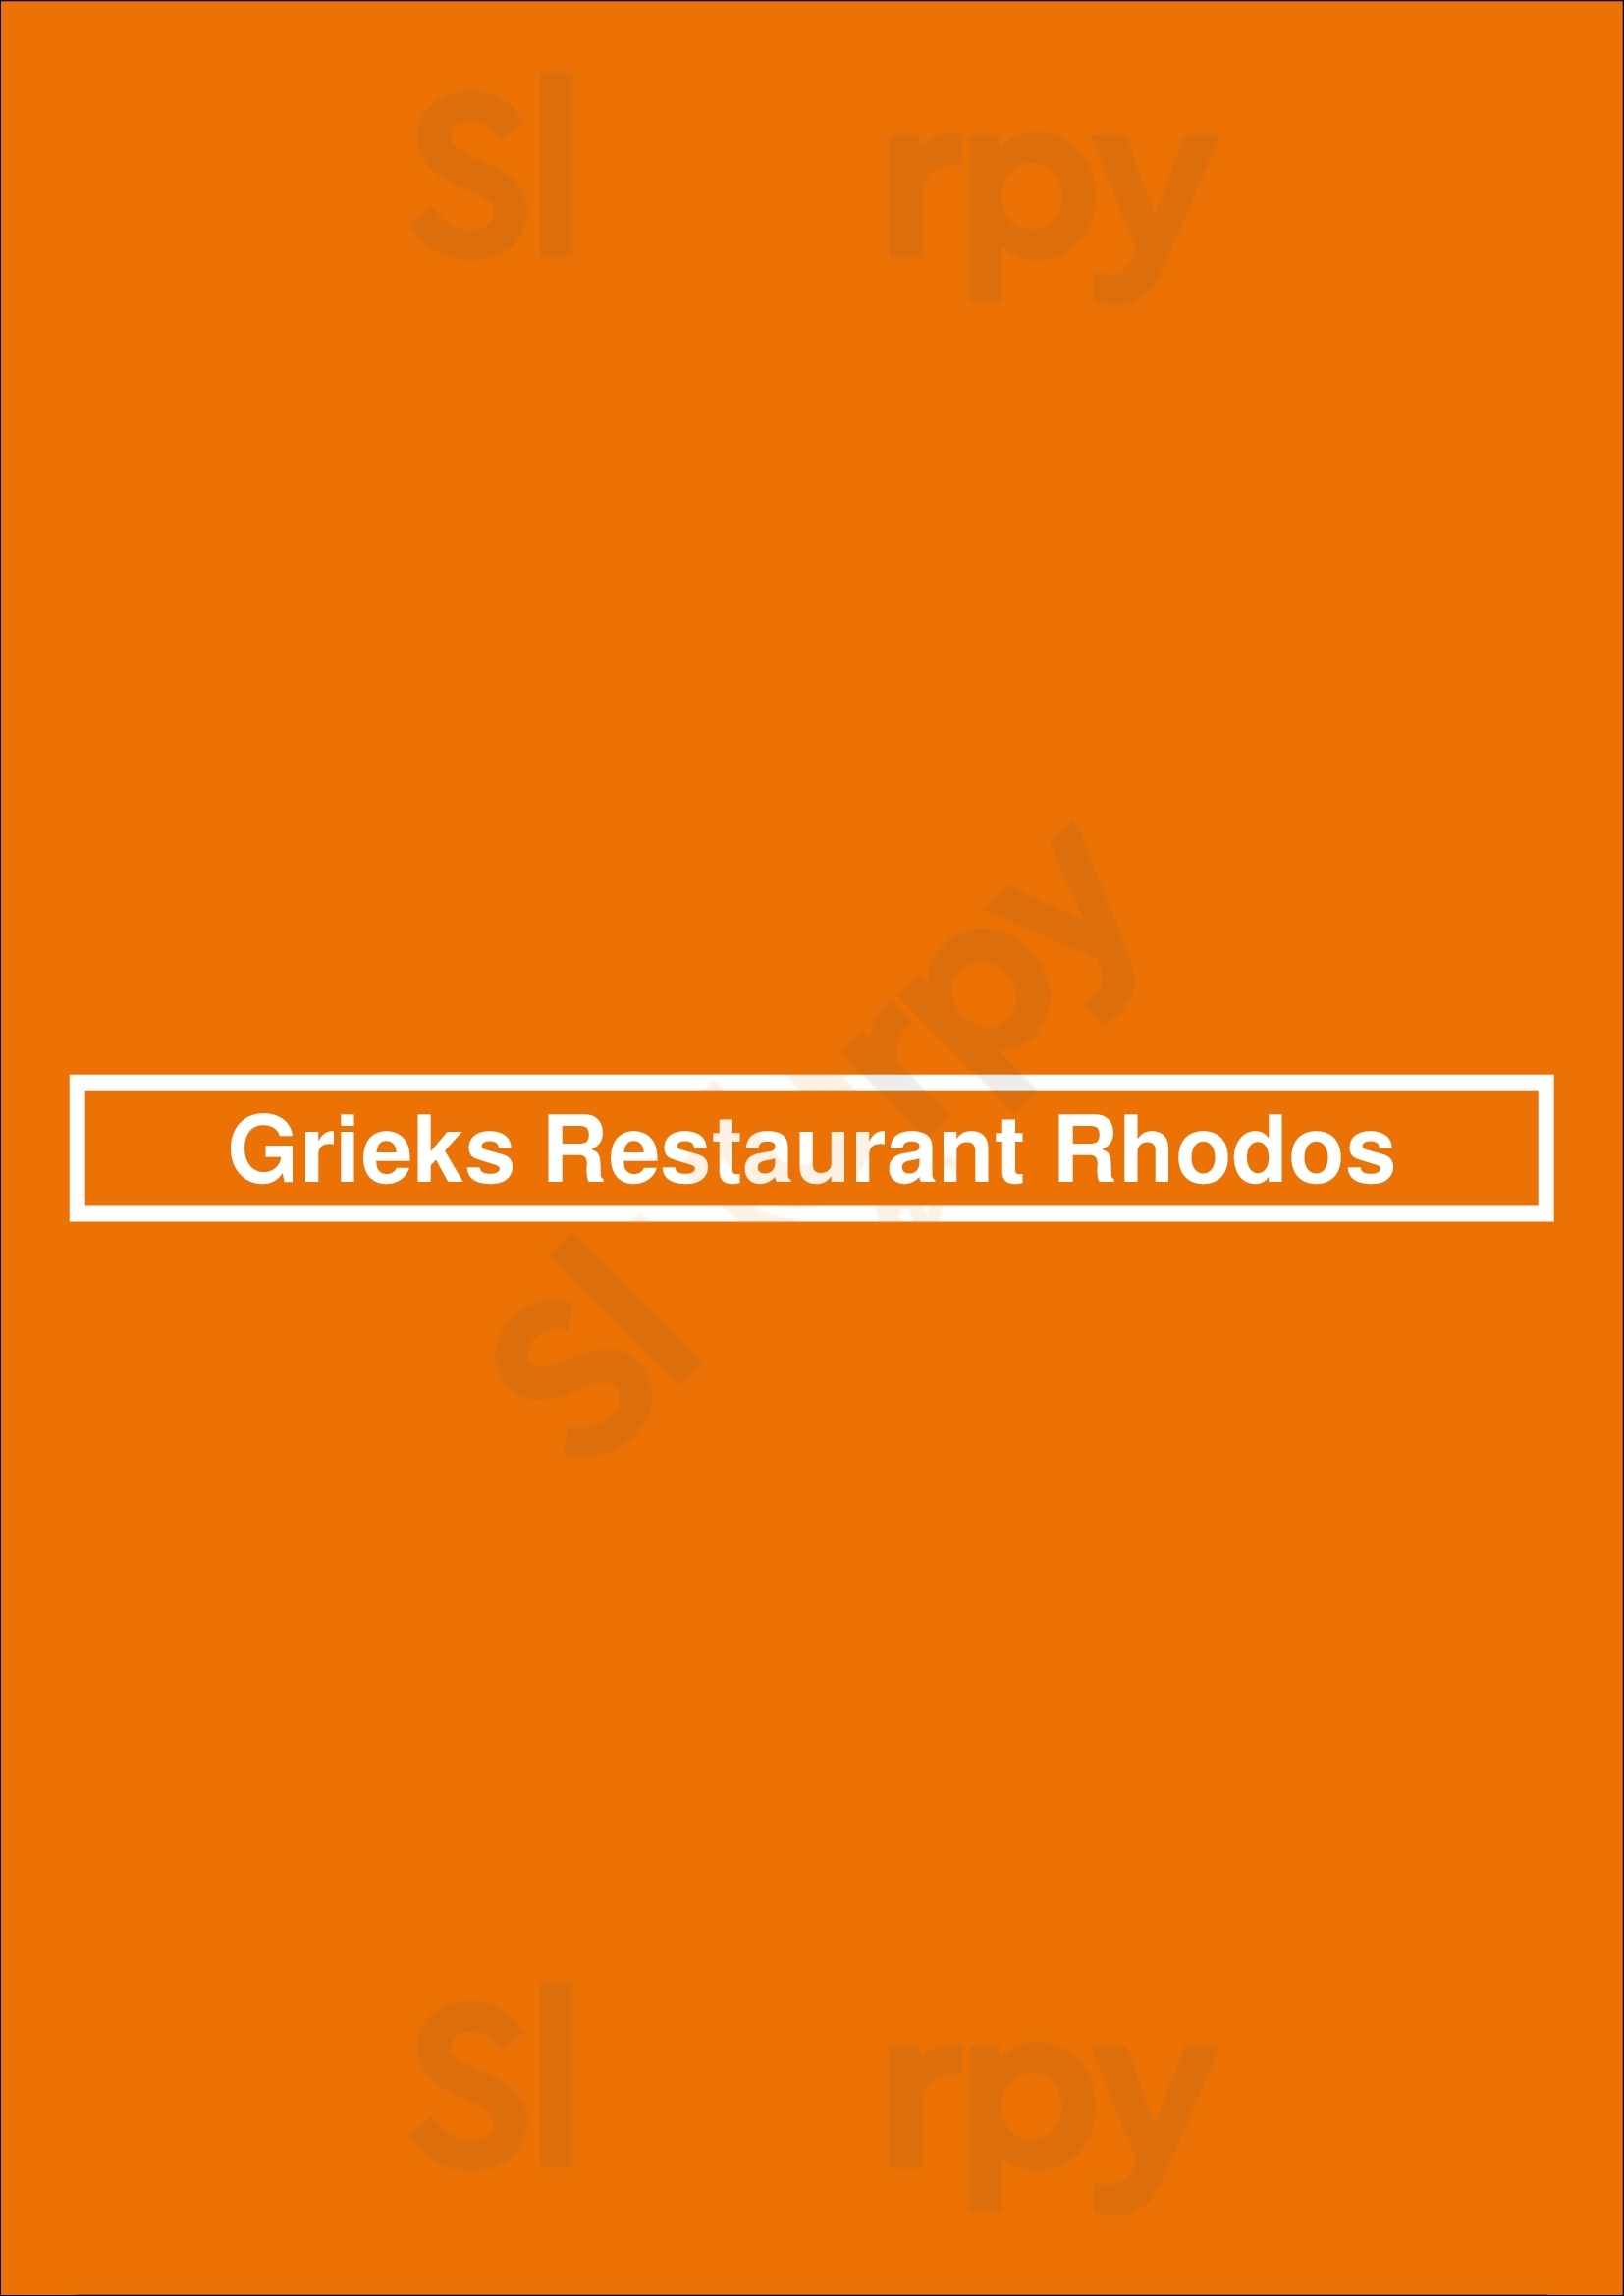 Grieks Restaurant Rhodos Goes Menu - 1